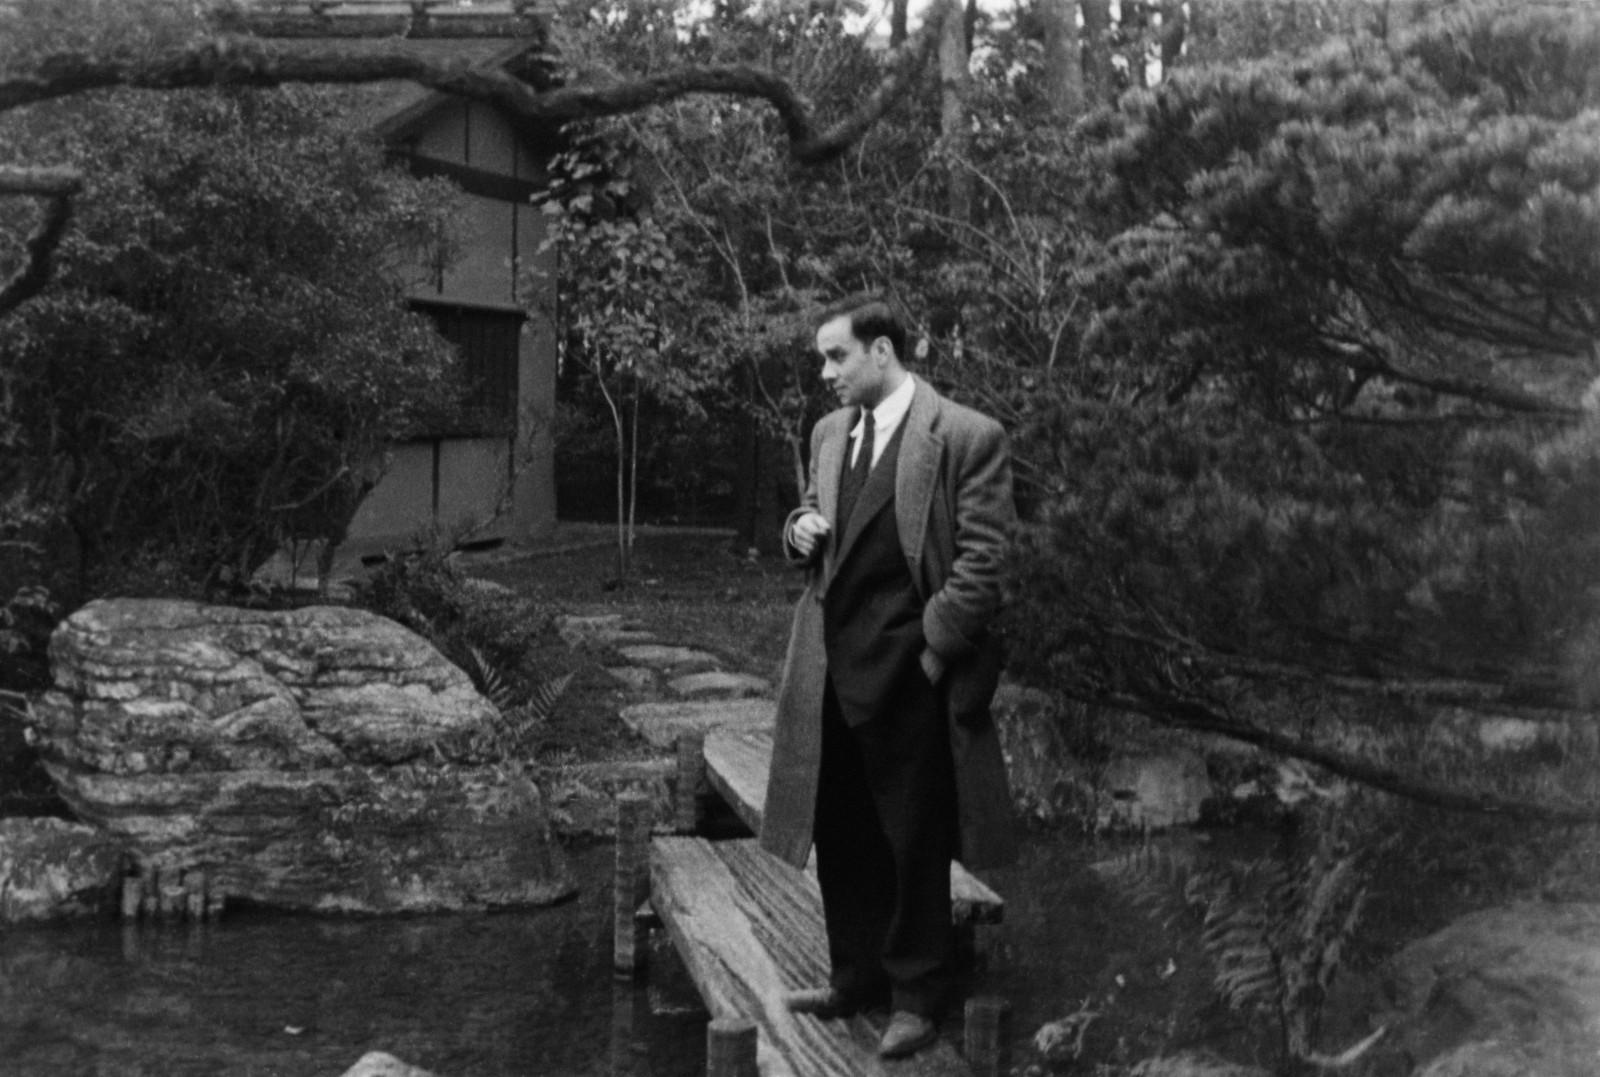 Yves Klein in a garden in Kyoto